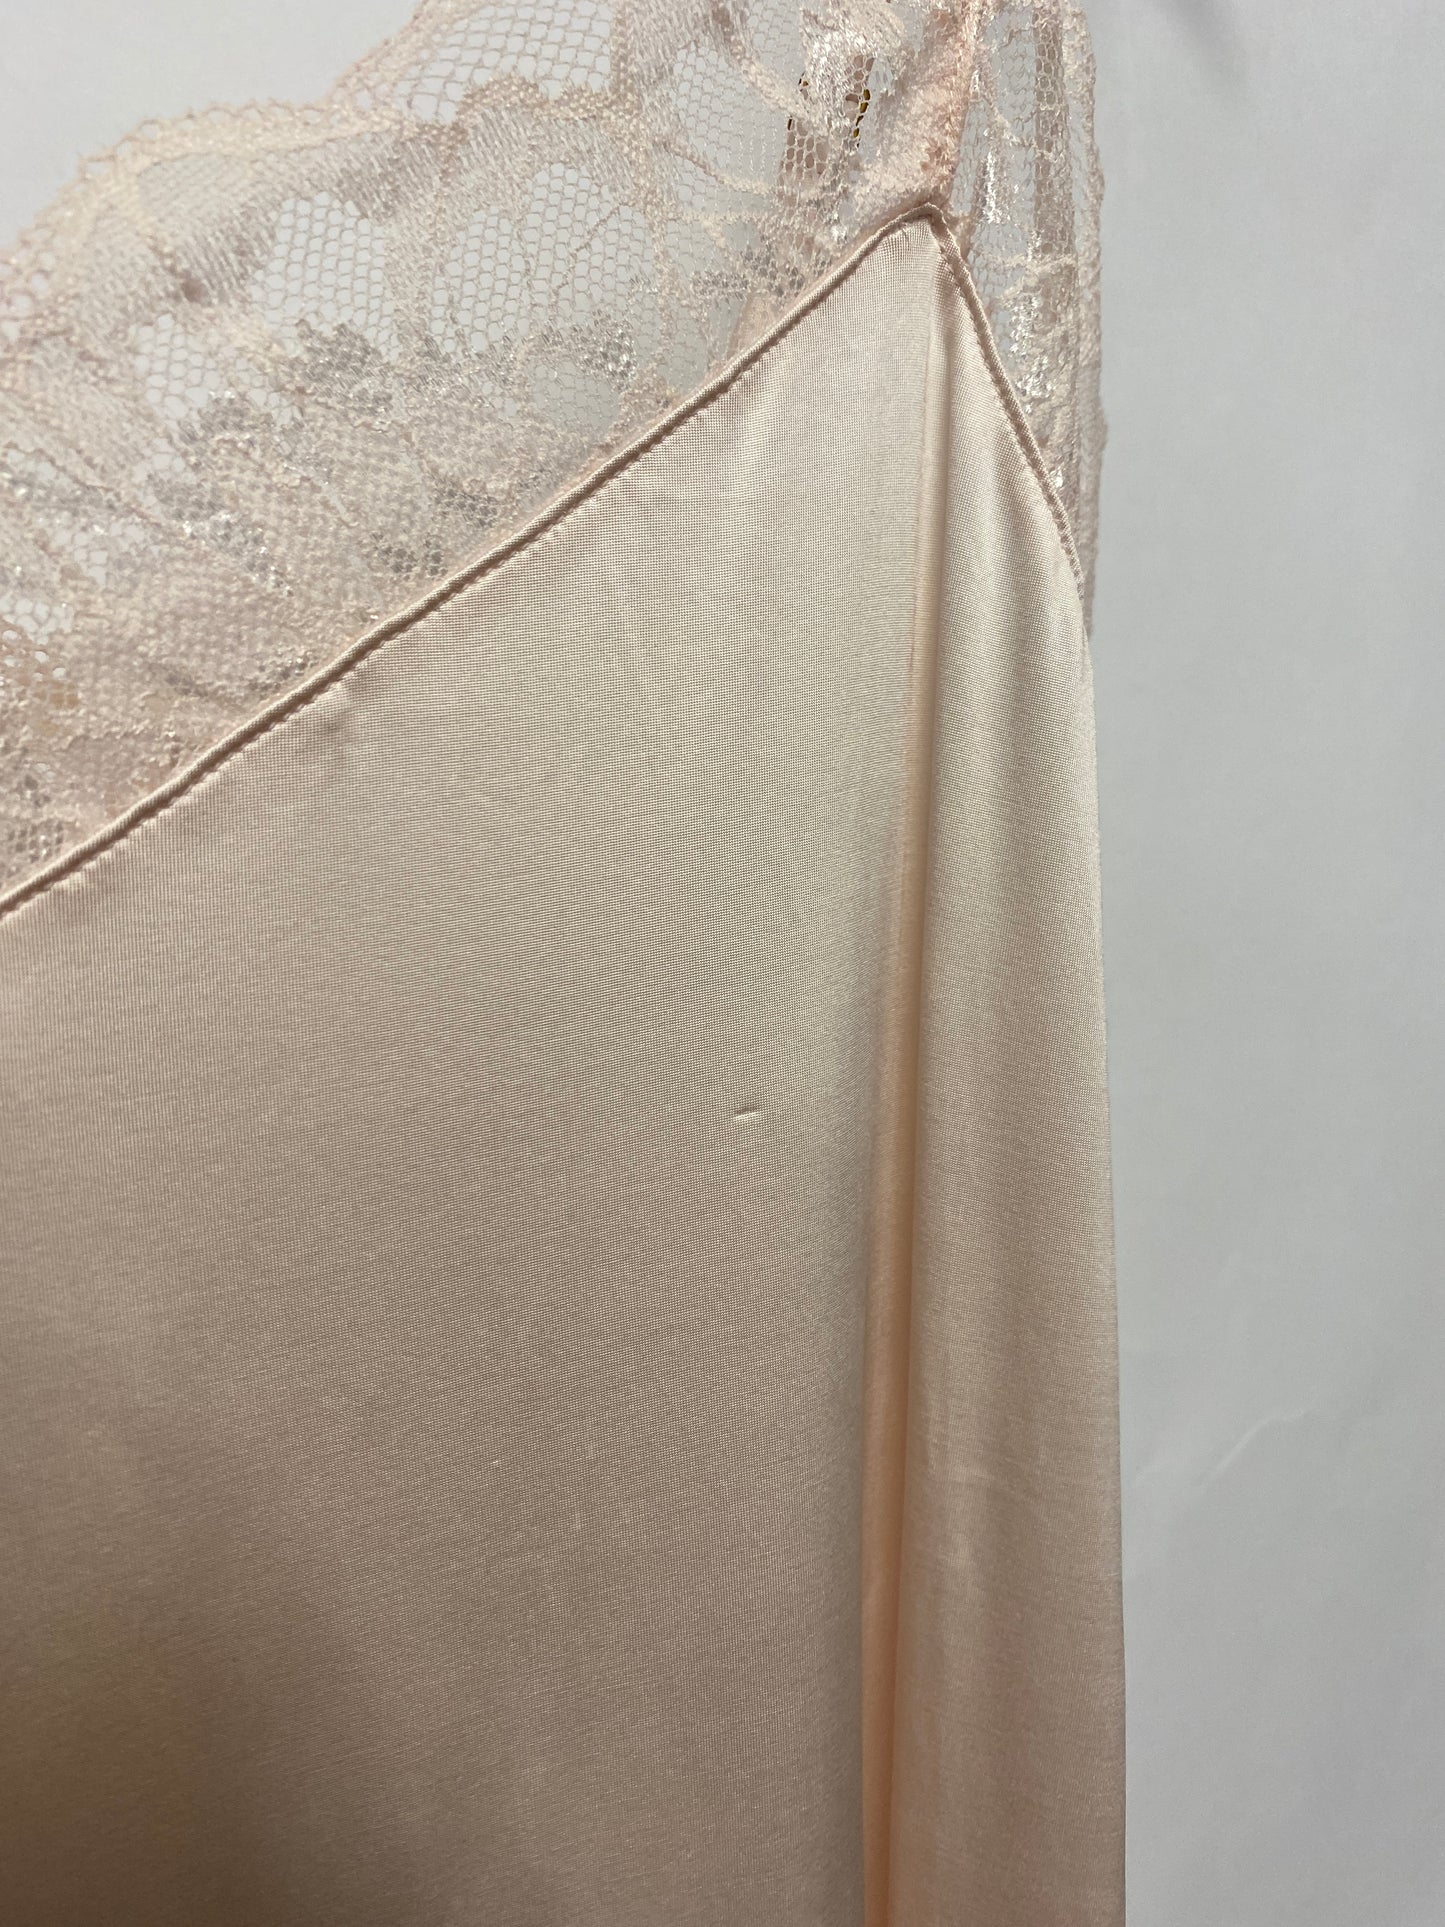 Hanro Pink Mae Negligee Slip Dress 14 BNWT